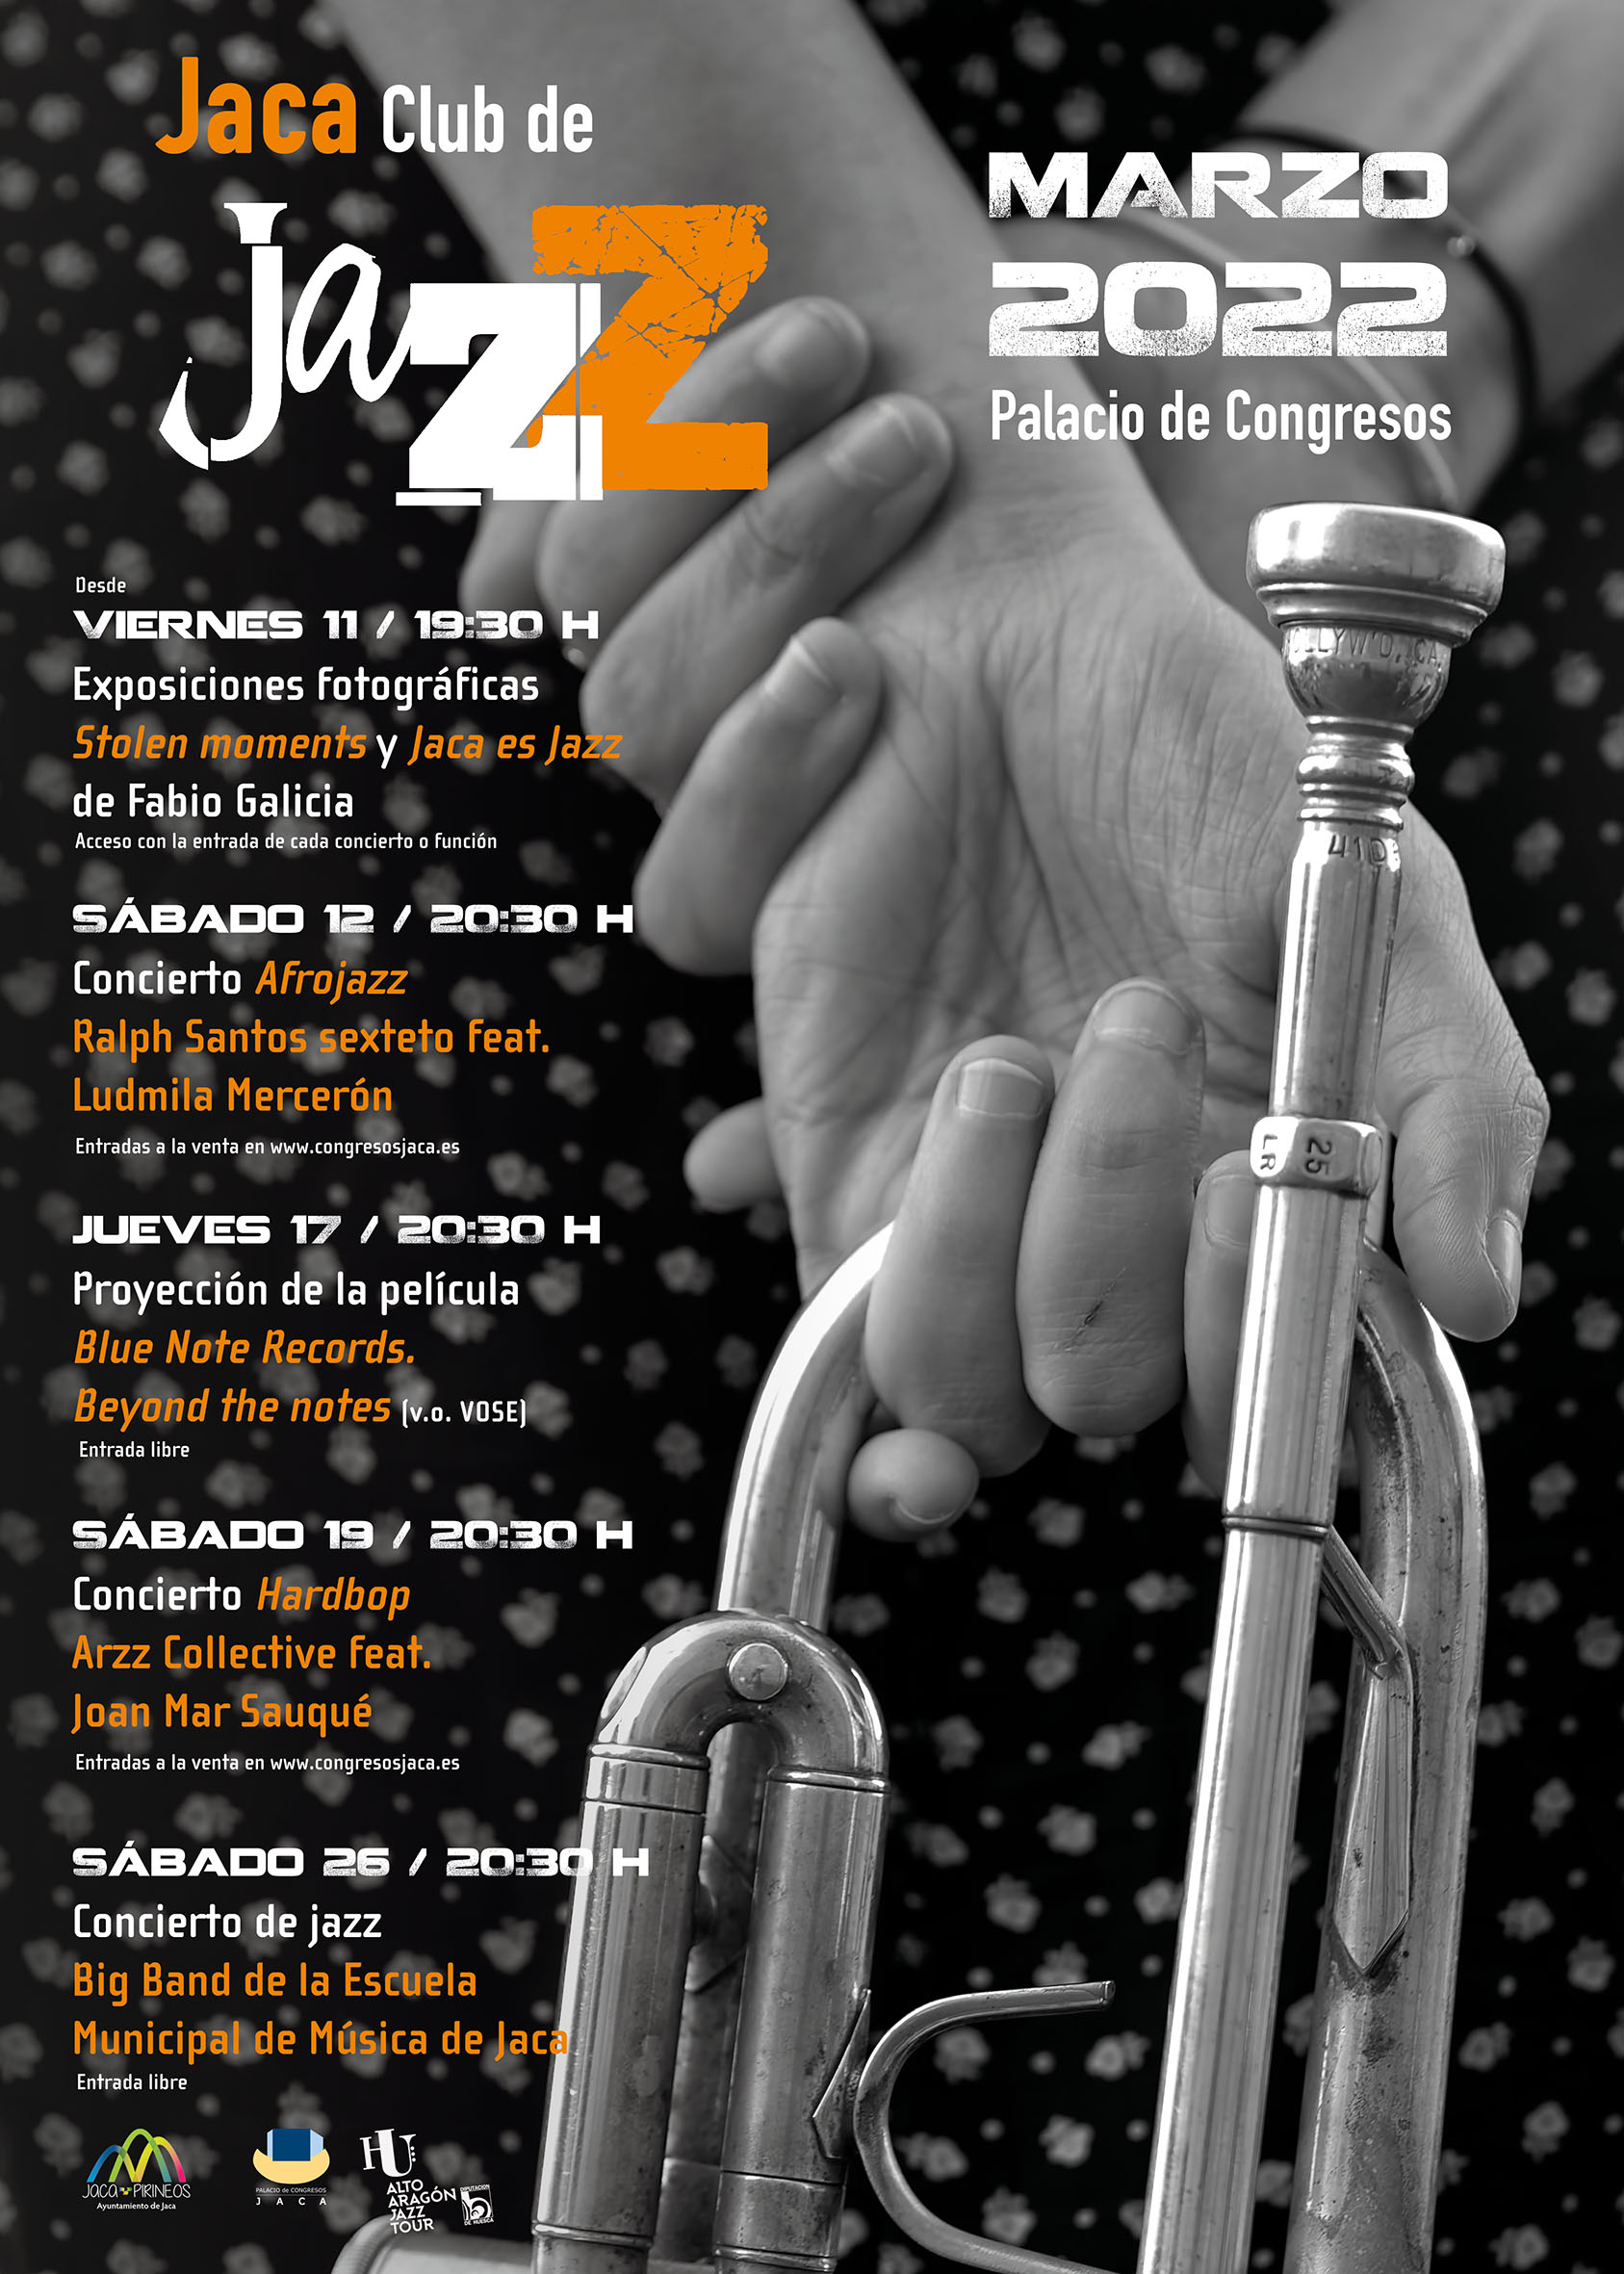 NÚCLEO<br />
Festival multidisciplinar de cultura contemporánea de Jaca